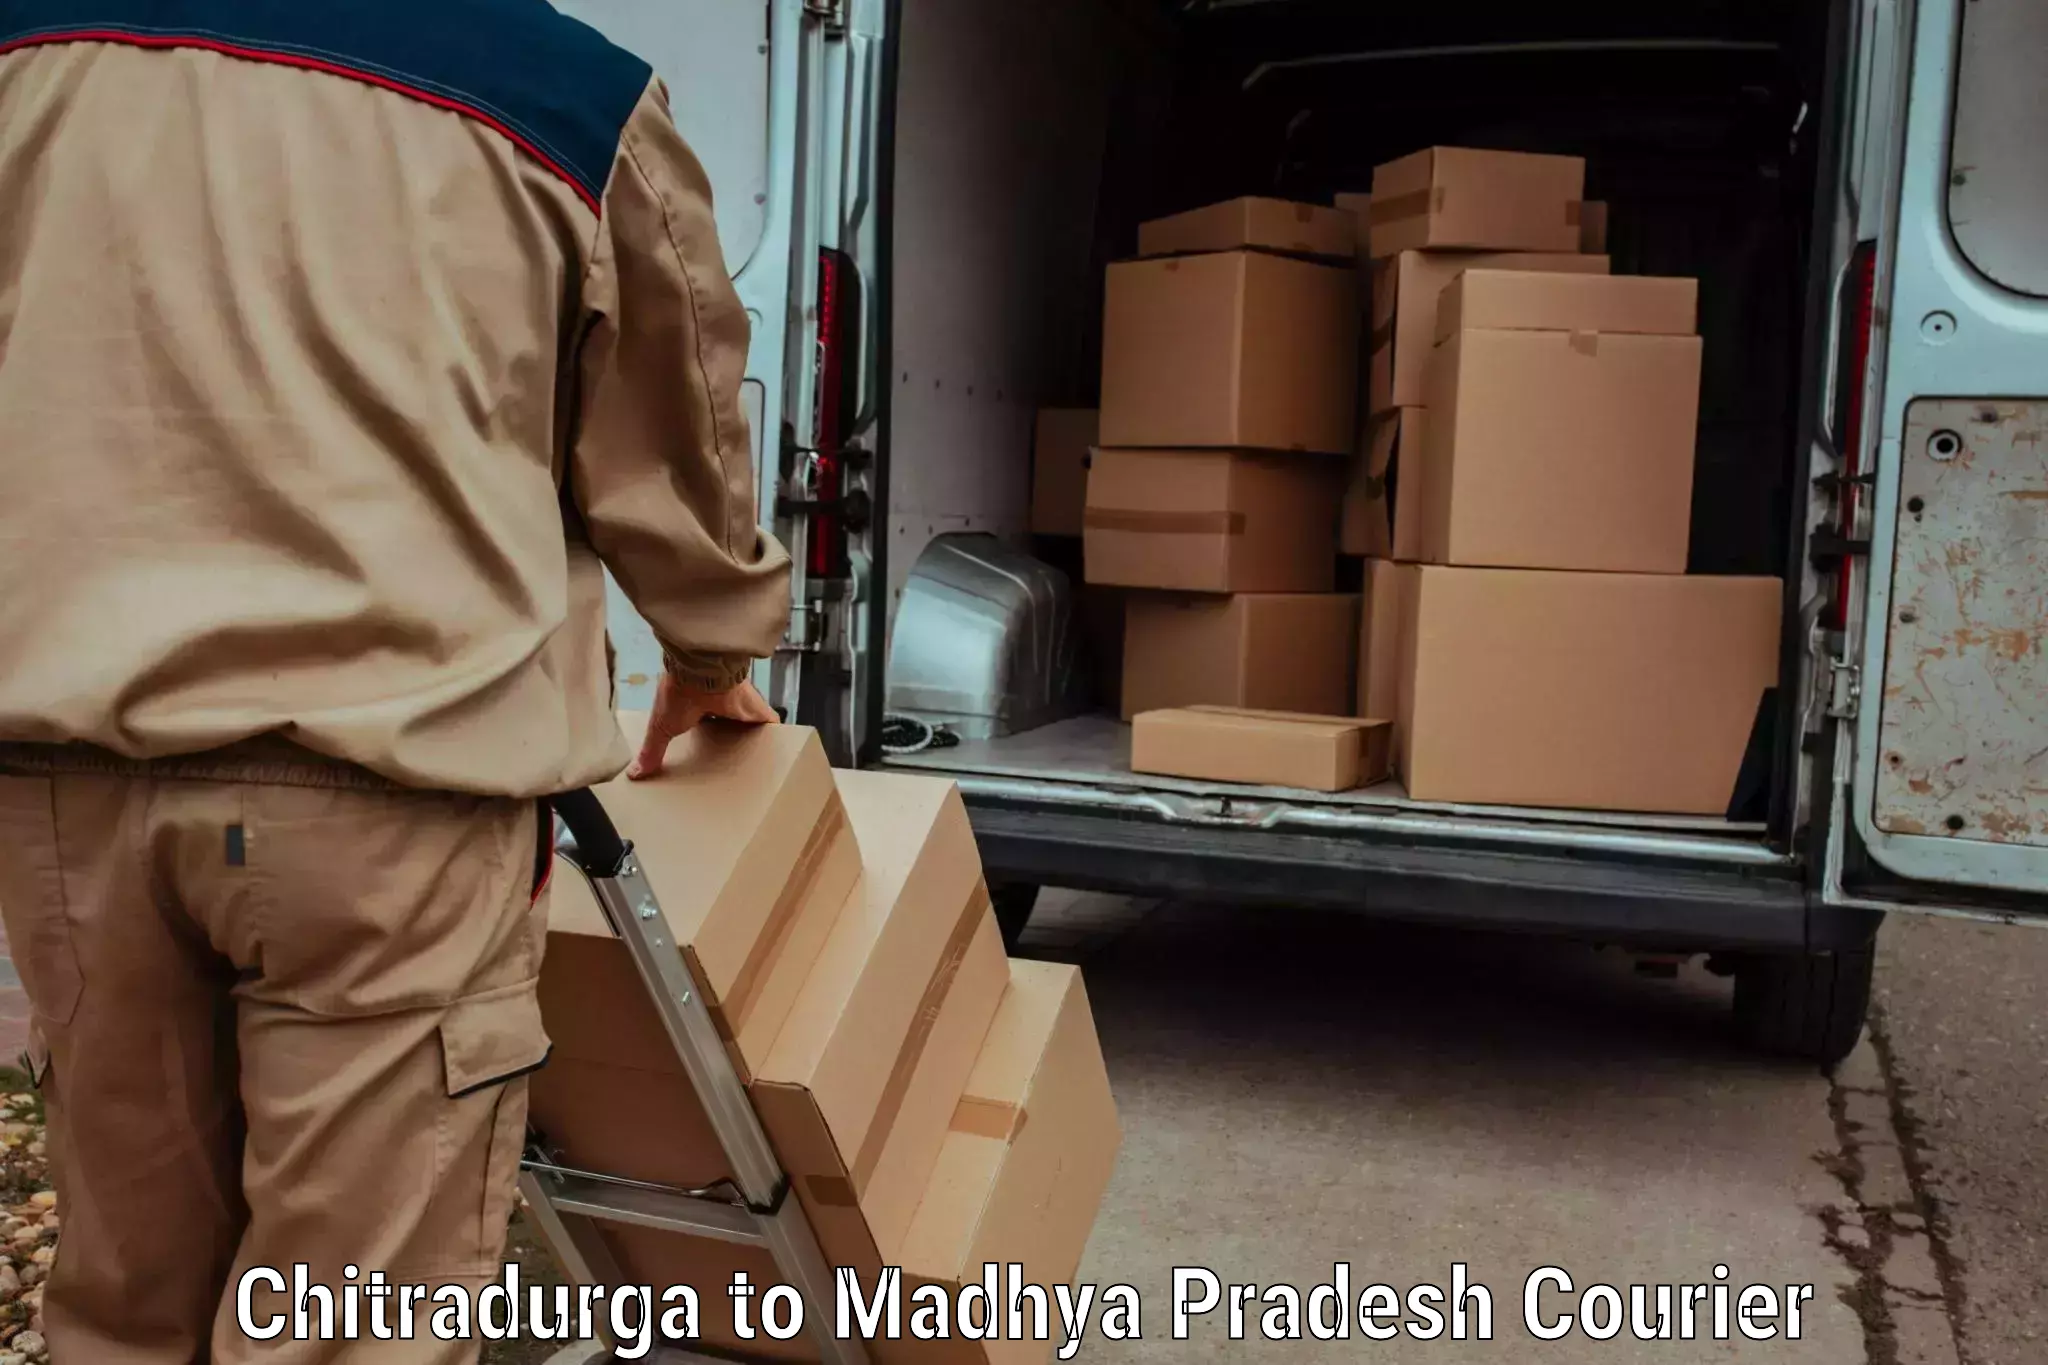 Courier service comparison Chitradurga to Rajgarh